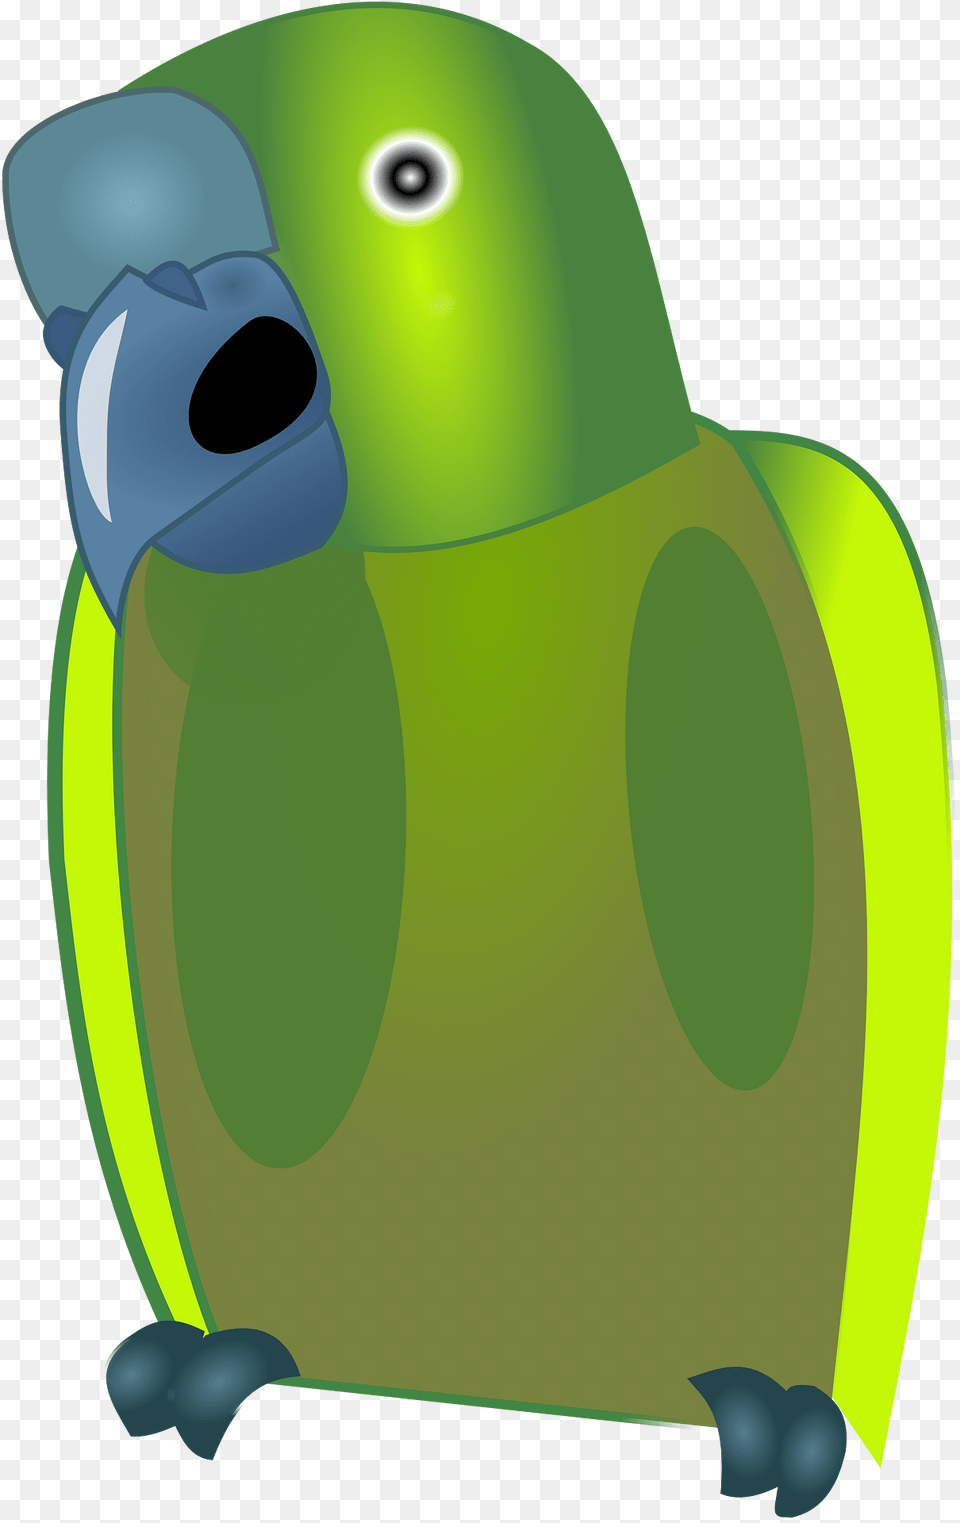 Green Clipart, Animal, Bird, Parakeet, Parrot Png Image